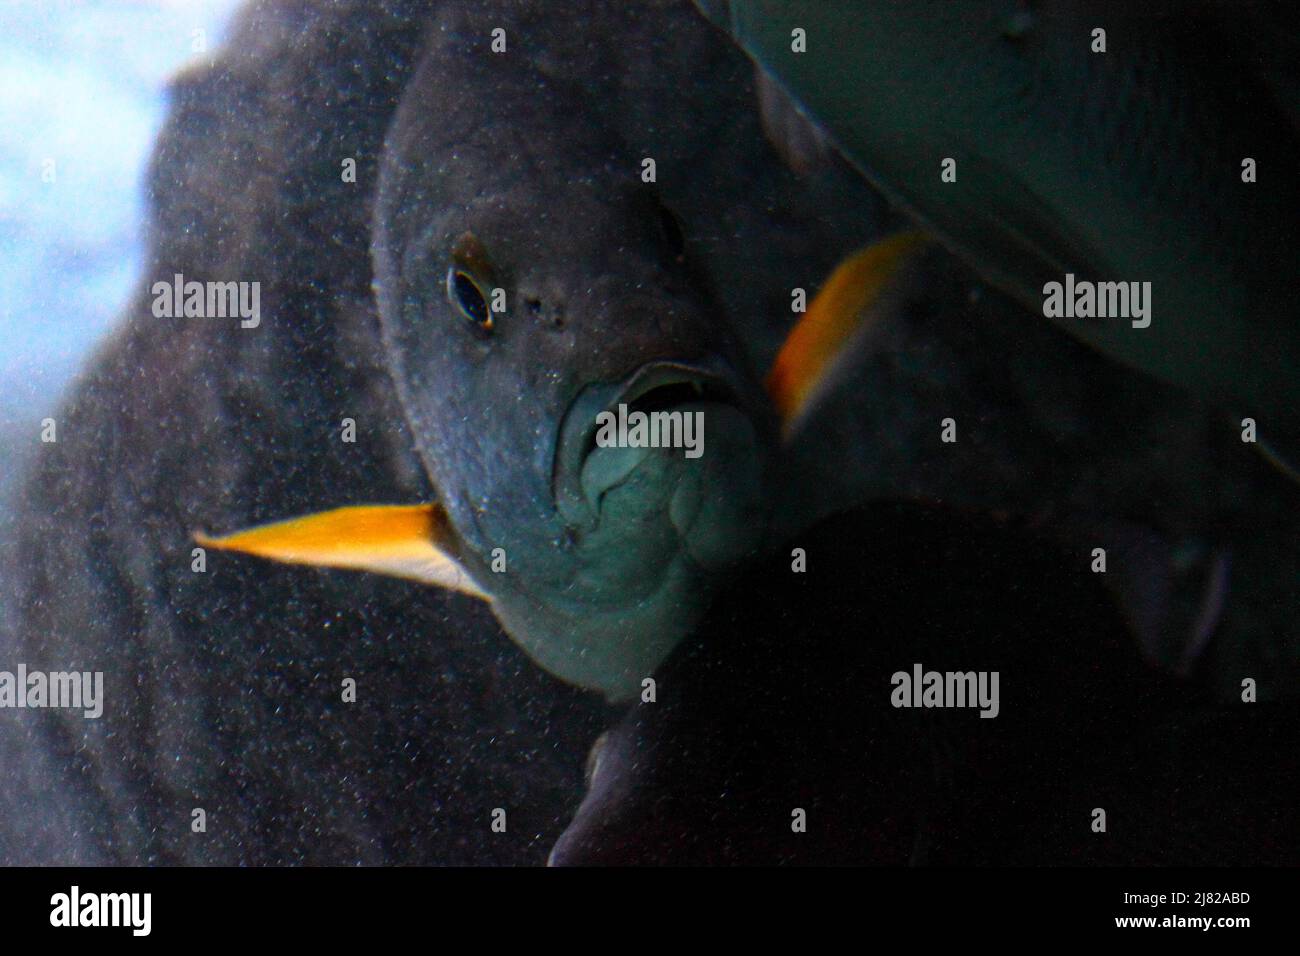 Epinephelus labriformis, communément nommé Mérou étoile, est une espèce de poissons marins de la famille des Serranidae Foto Stock